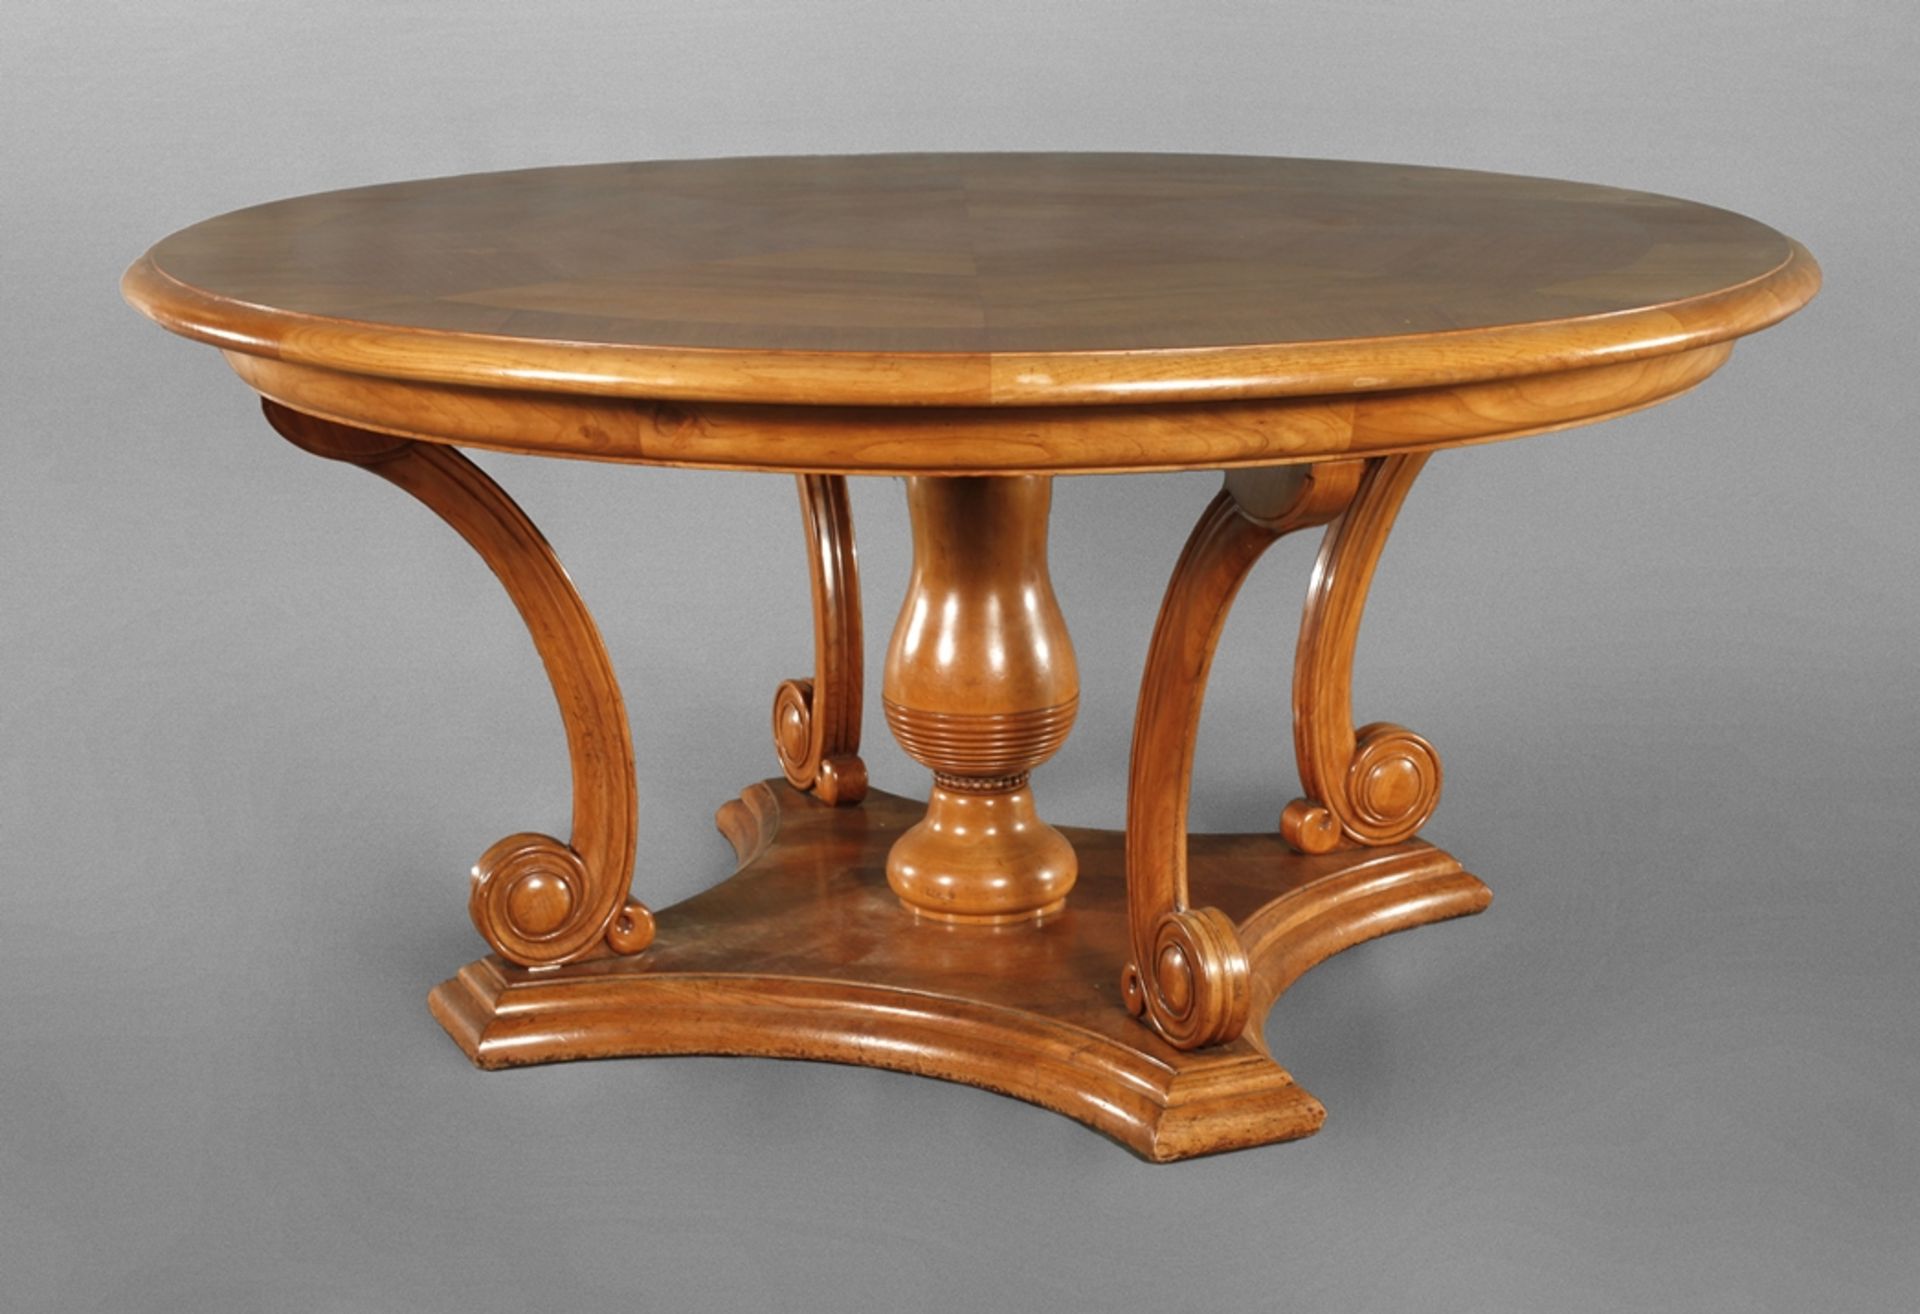 Large Art Nouveau dining table